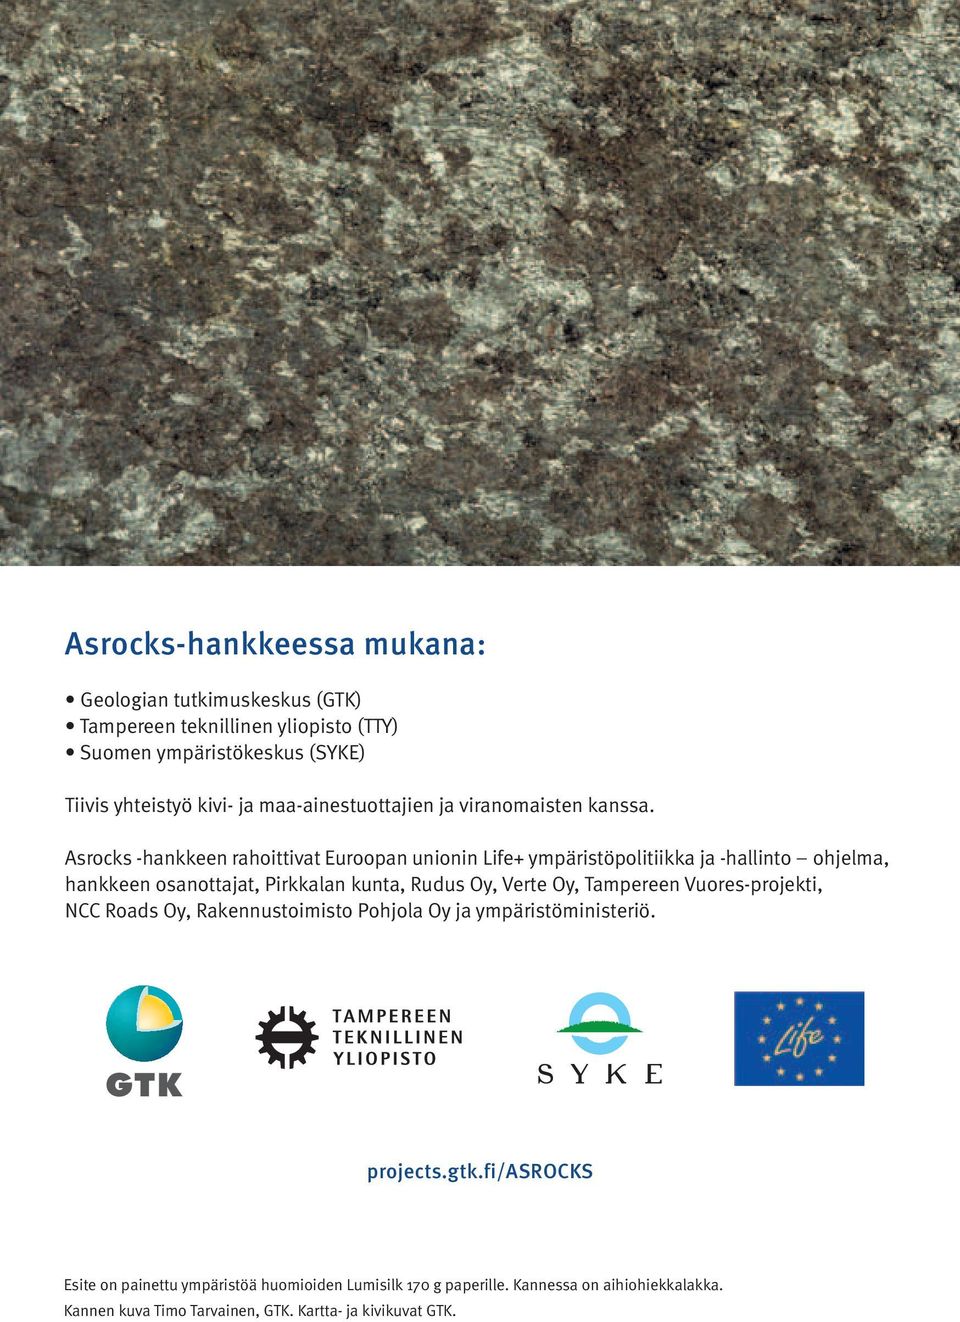 Asrocks -hankkeen rahoittivat Euroopan unionin Life+ ympäristöpolitiikka ja -hallinto ohjelma, hankkeen osanottajat, Pirkkalan kunta, Rudus Oy, Verte Oy,